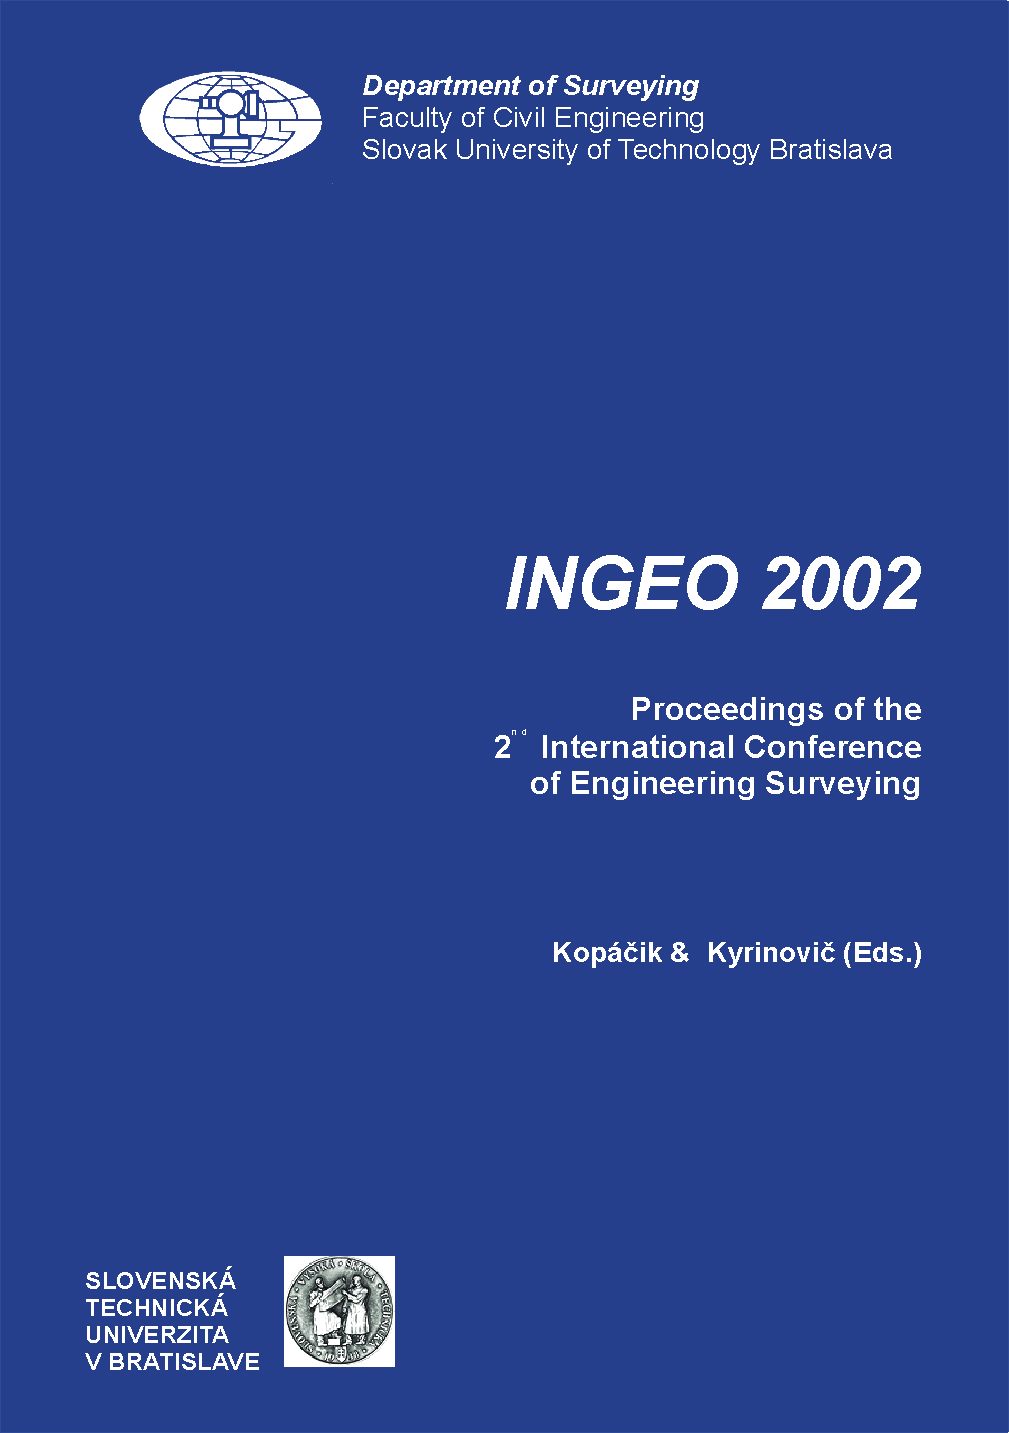 Proceedings of the INGEO 2002